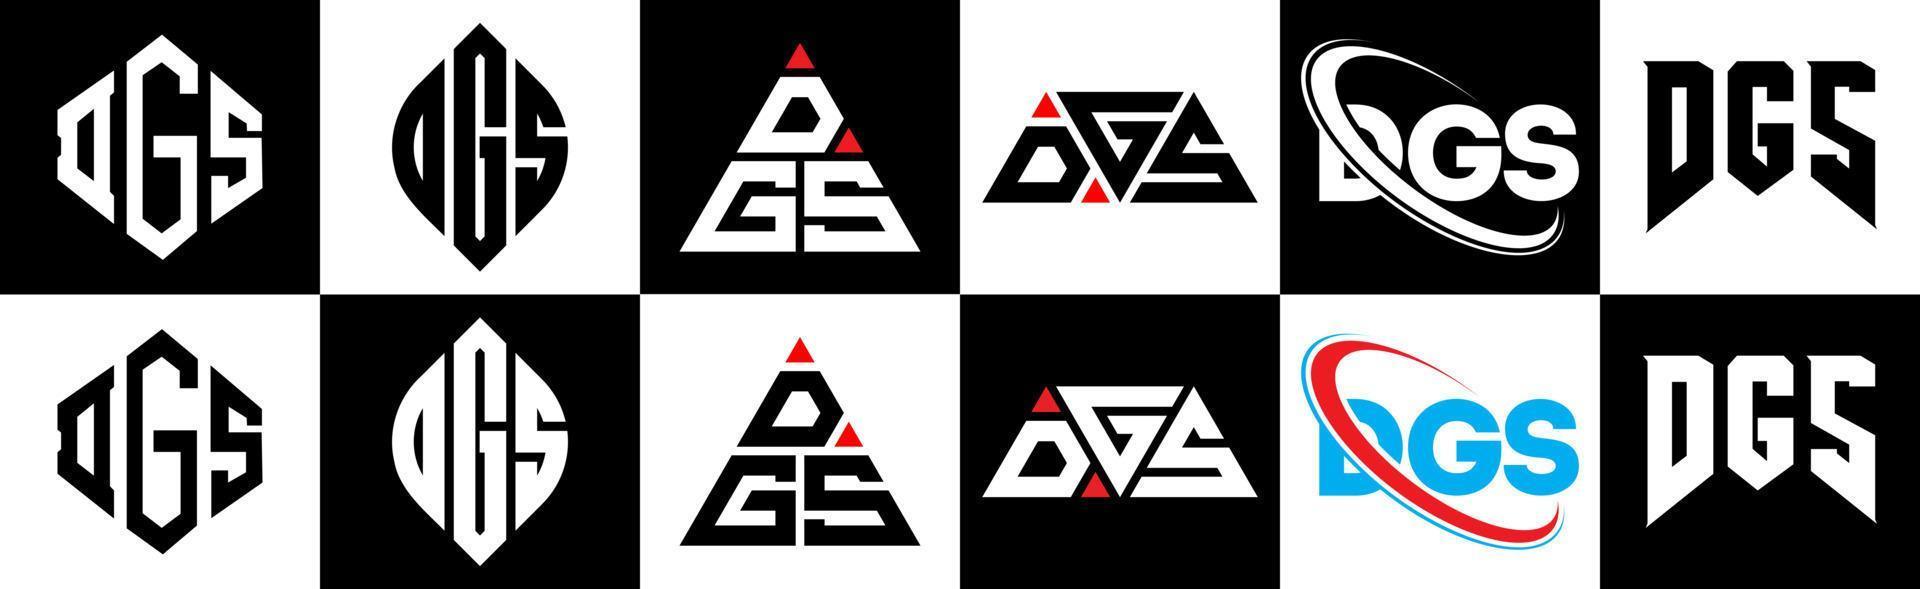 création de logo de lettre dgs en six styles. dgs polygone, cercle, triangle, hexagone, style plat et simple avec logo de lettre de variation de couleur noir et blanc dans un plan de travail. dgs logo minimaliste et classique vecteur